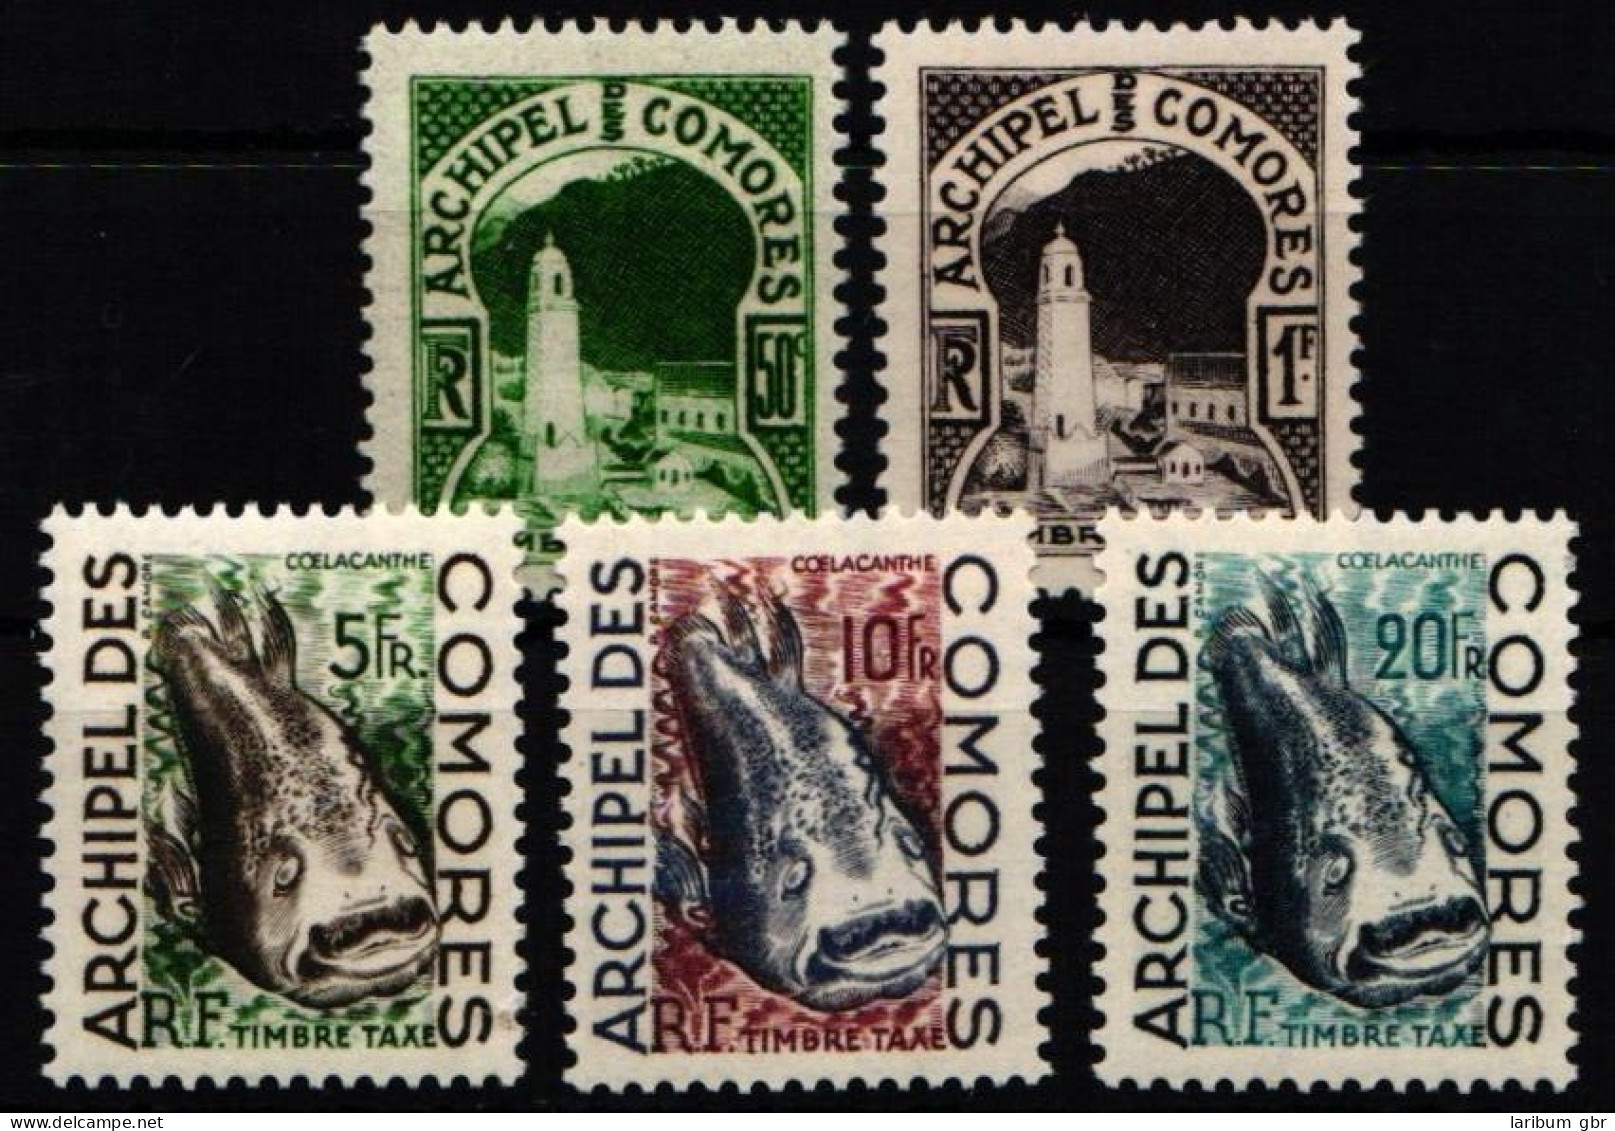 Komoren Portomarken 1-5 Postfrisch #NH360 - Komoren (1975-...)